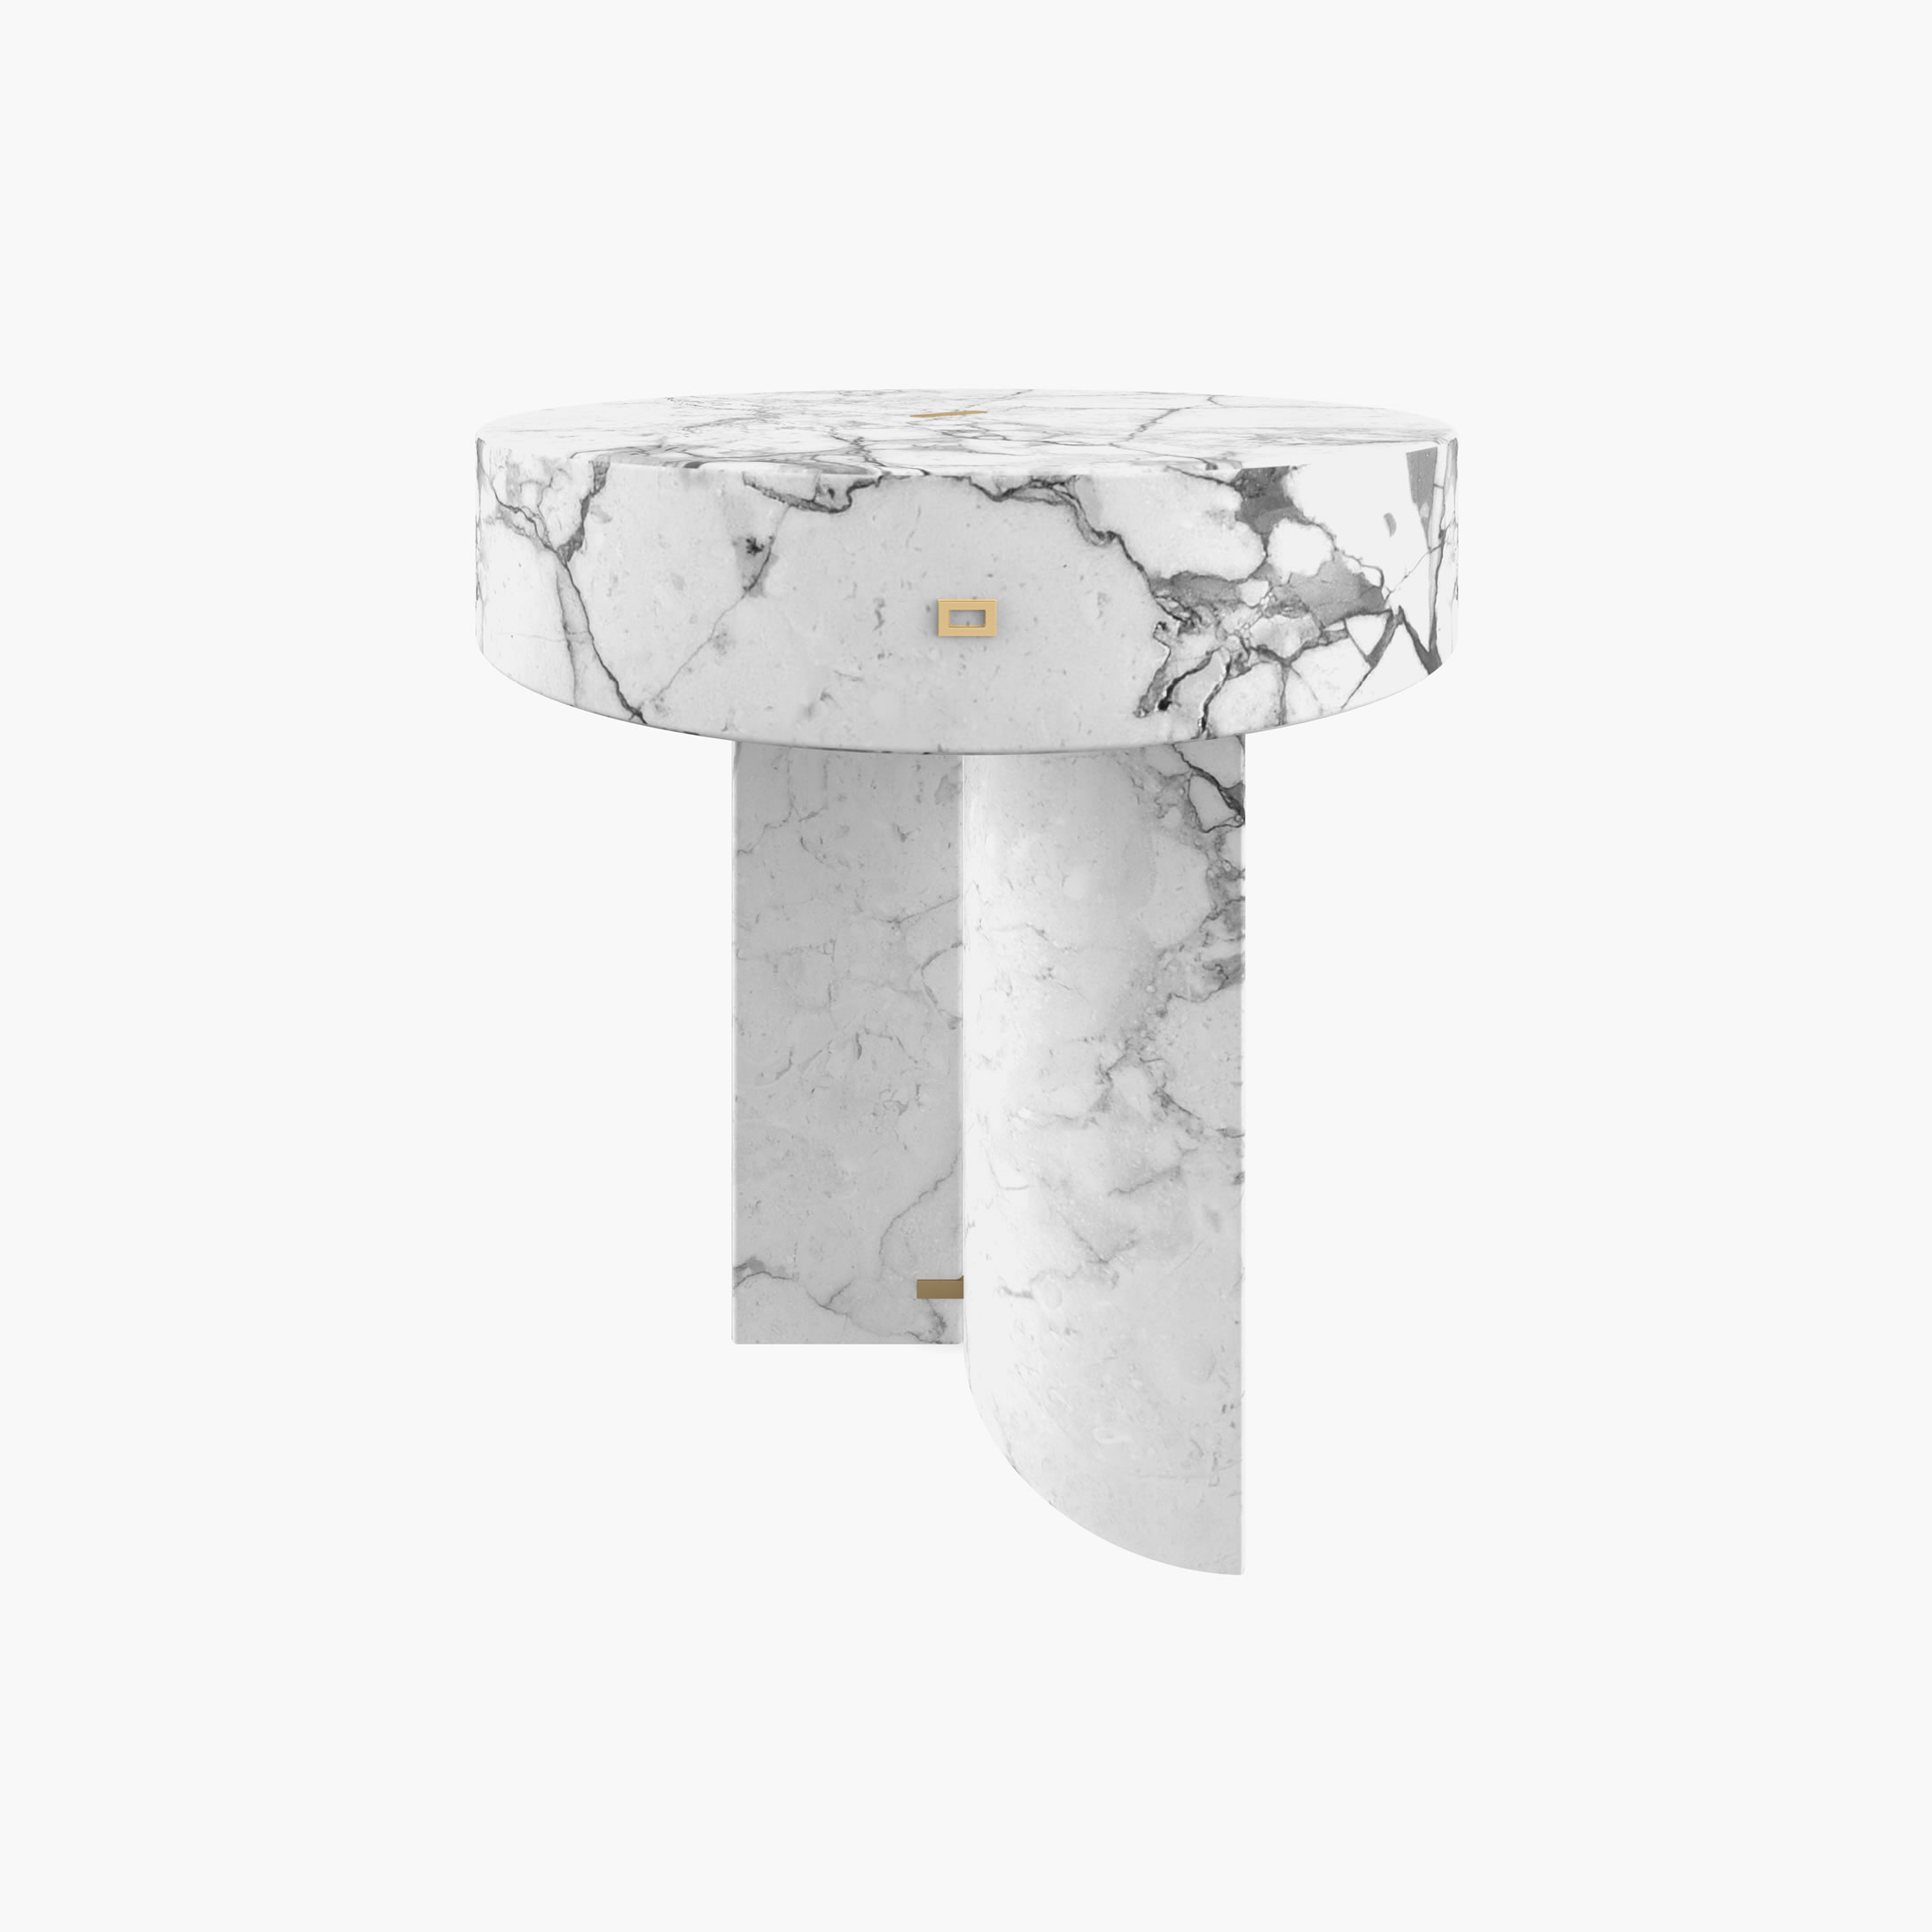 Beistelltisch rund Zylinder Quader Prisma Weiss Arabescato Marmor hochwertig Wohnzimmer moderne Kunst Beistelltische FS 129 1 FELIX SCHWAKE